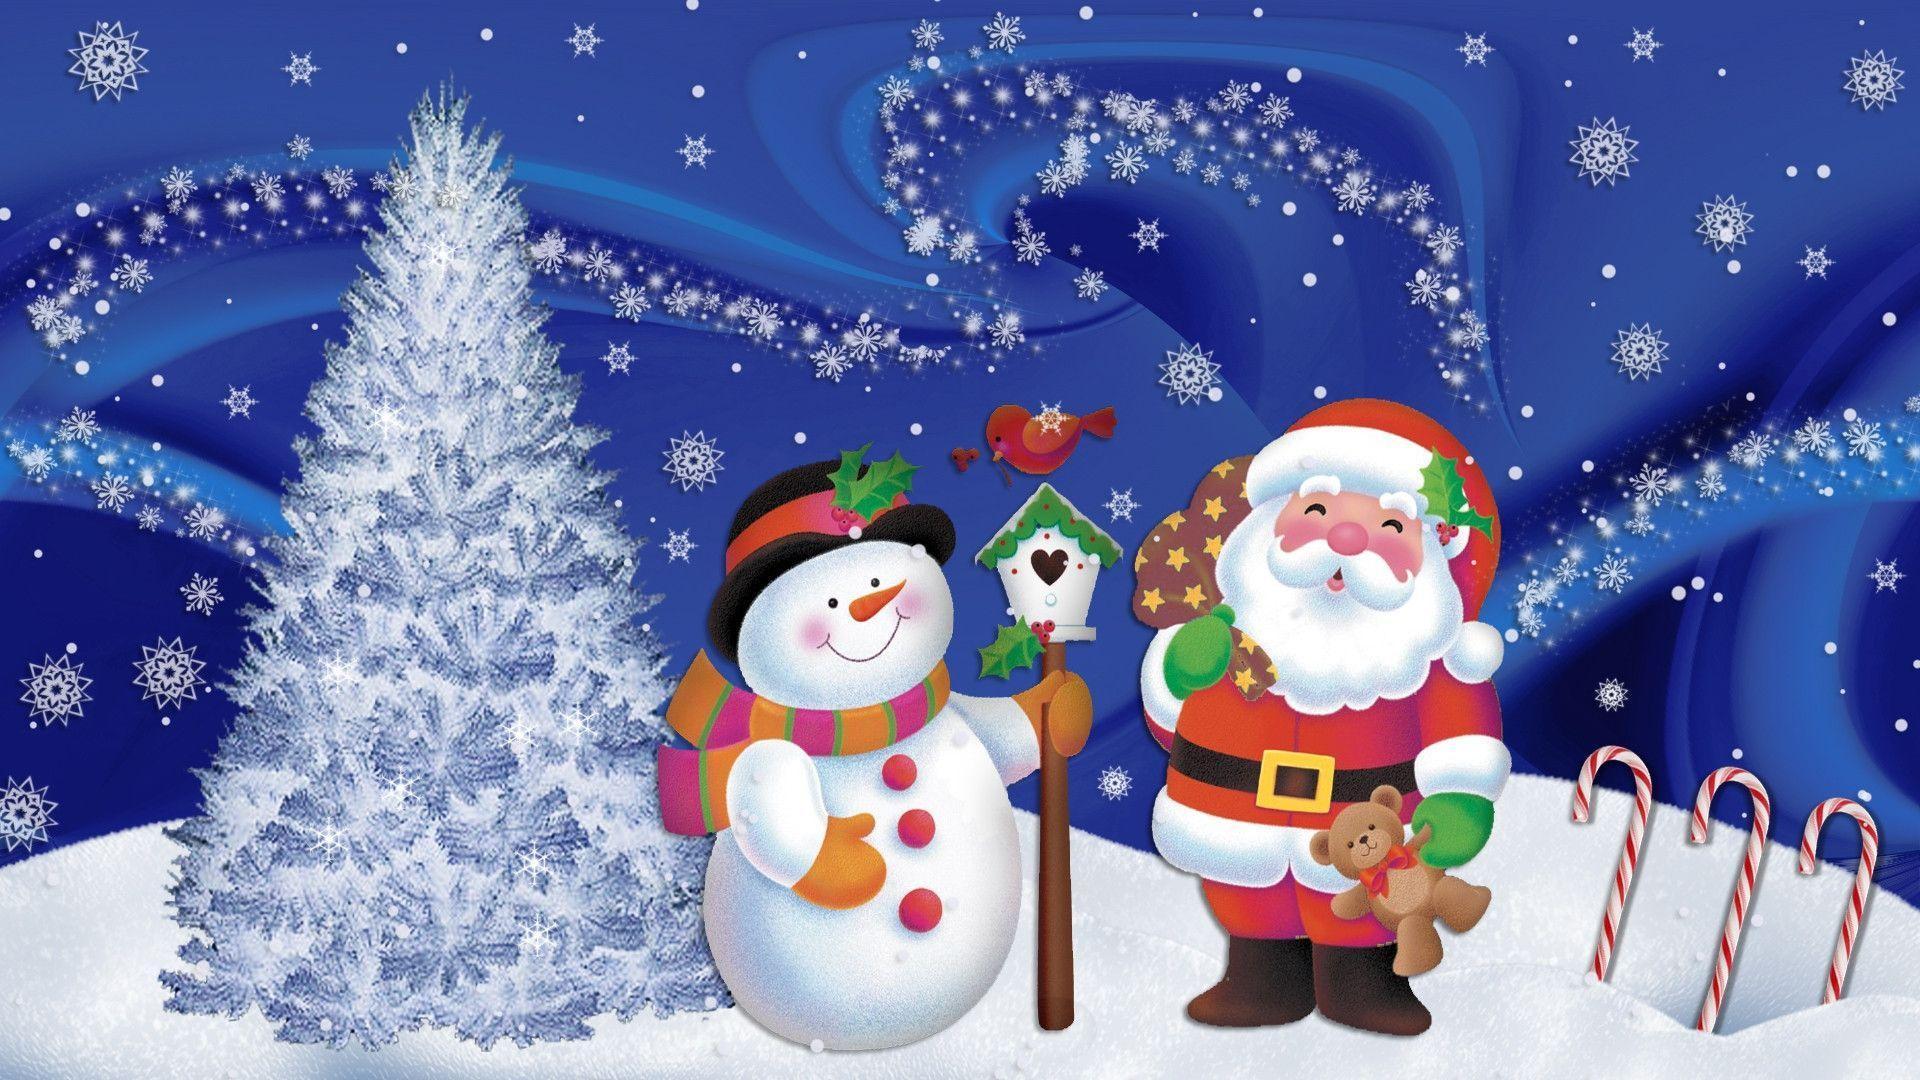 Animated Christmas Image, wallpaper, Animated Christmas Image HD